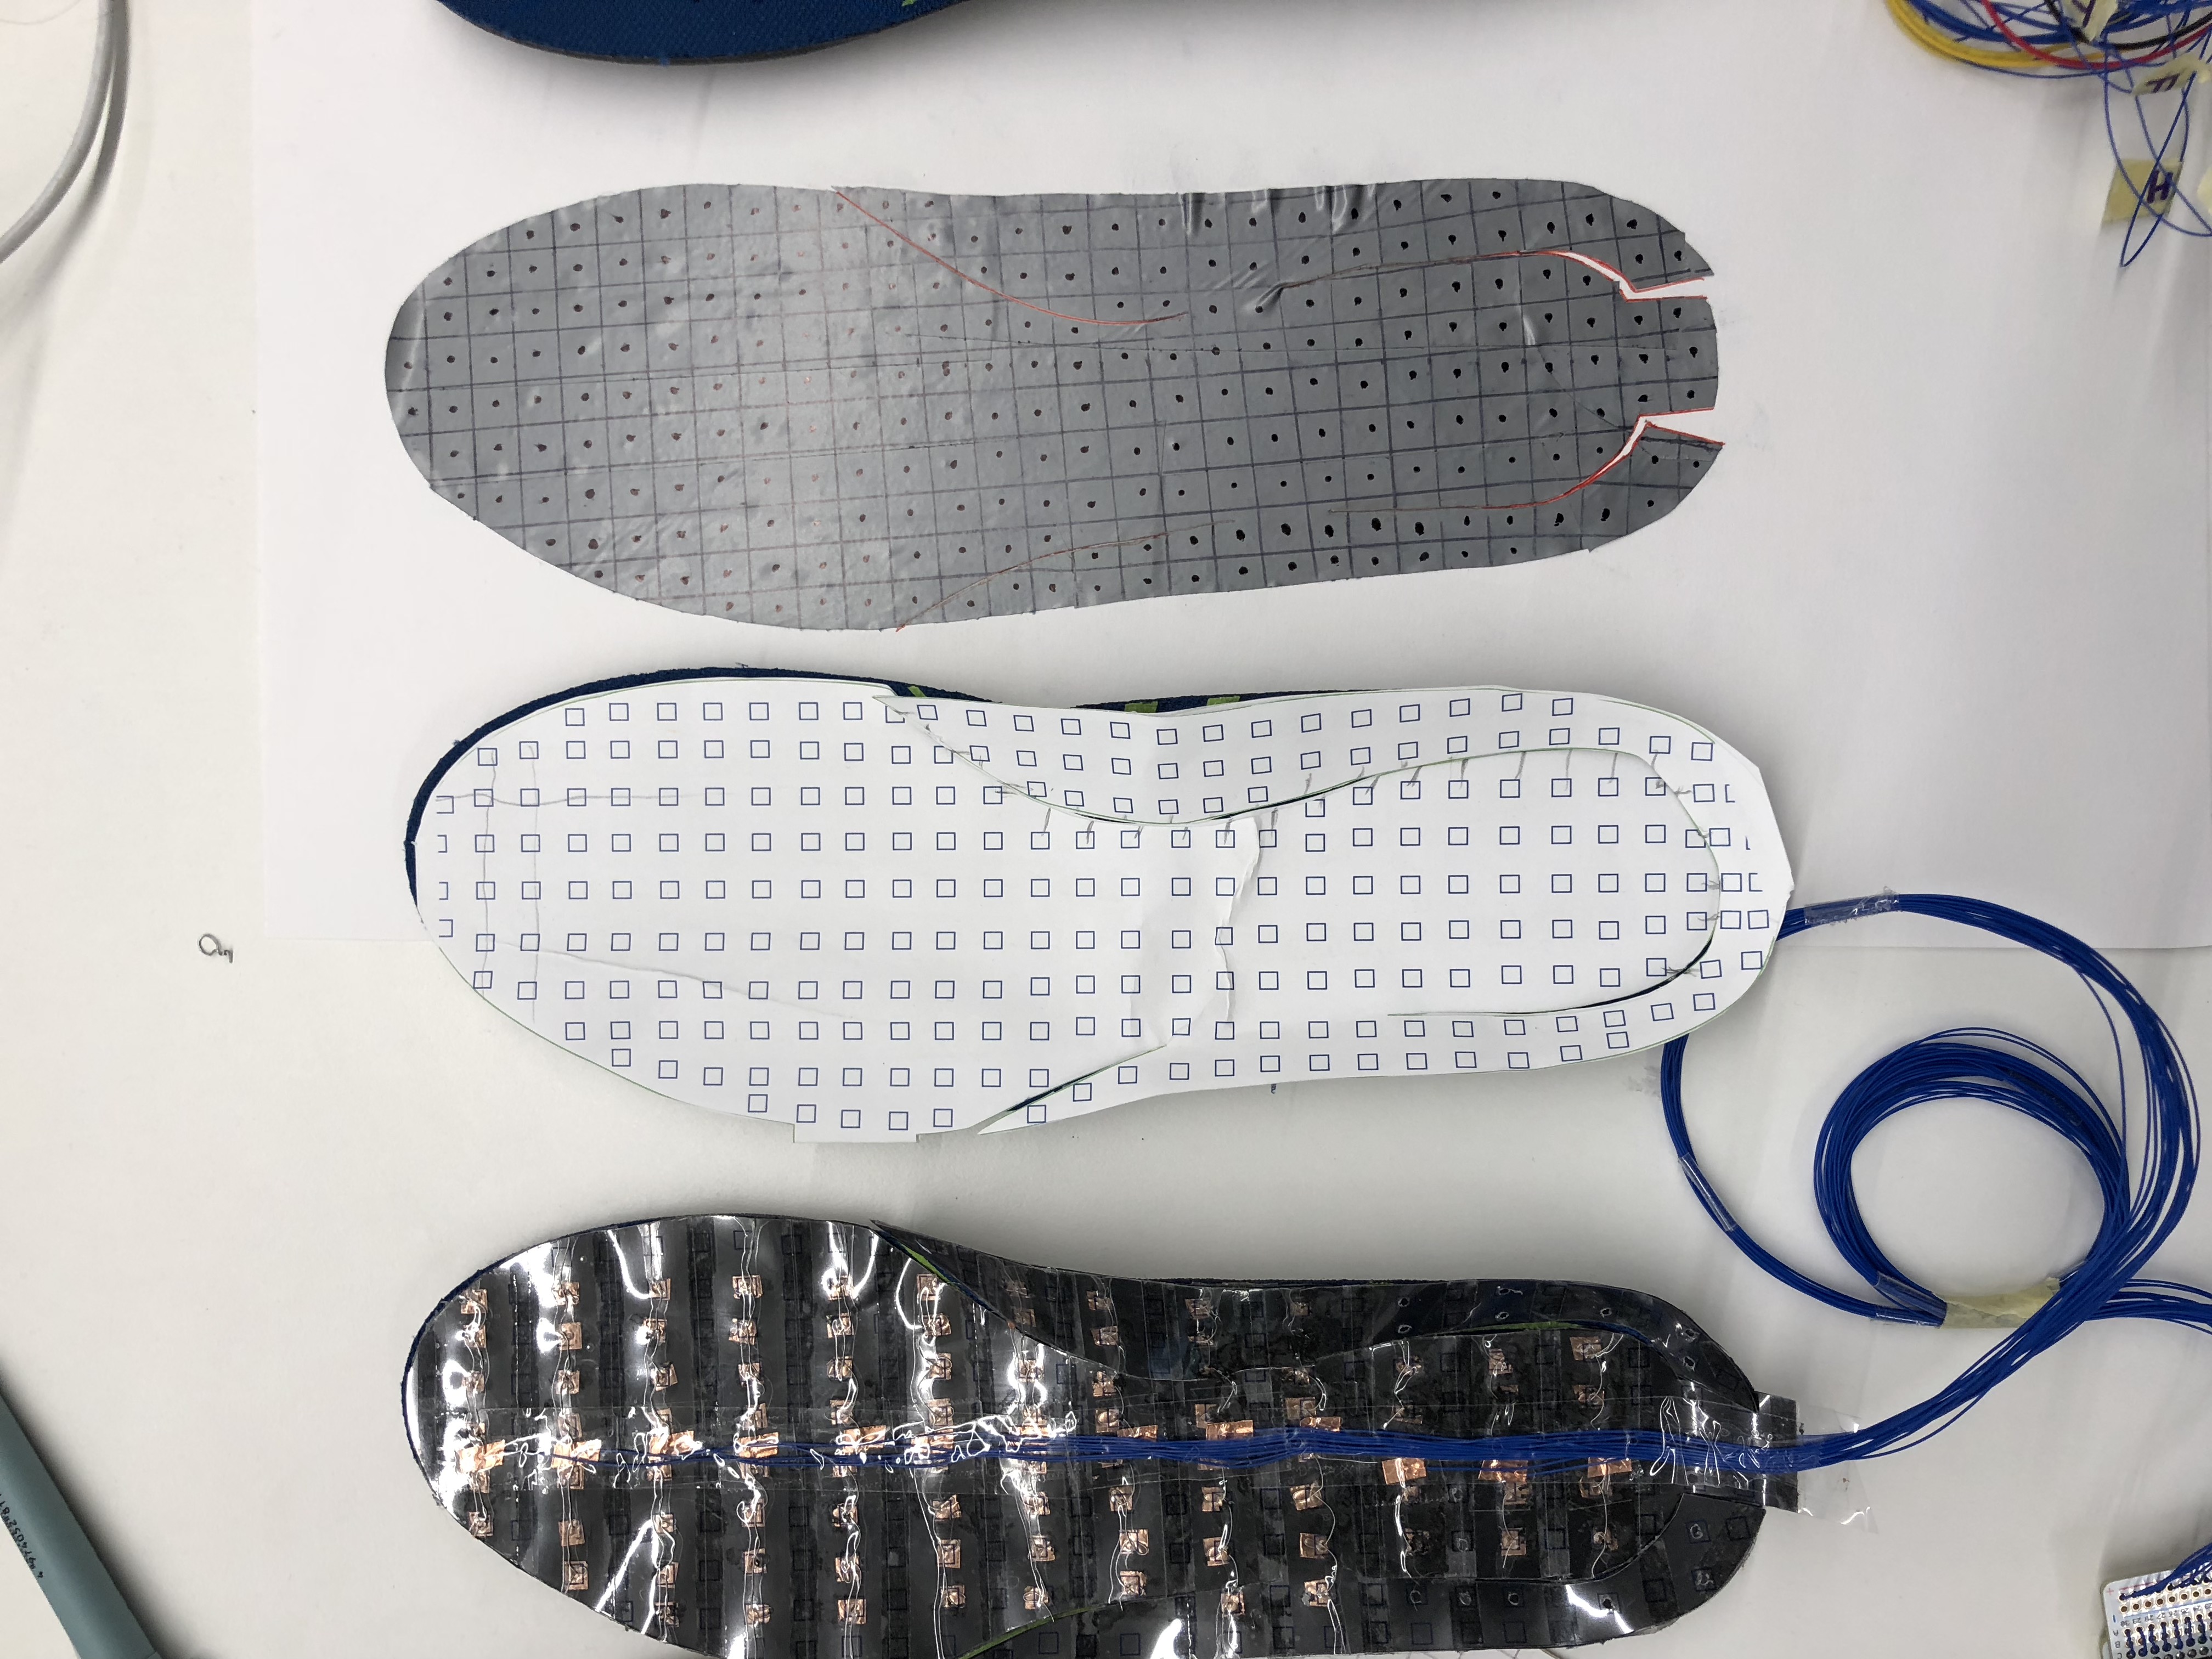 Smart Footwear Prototypes